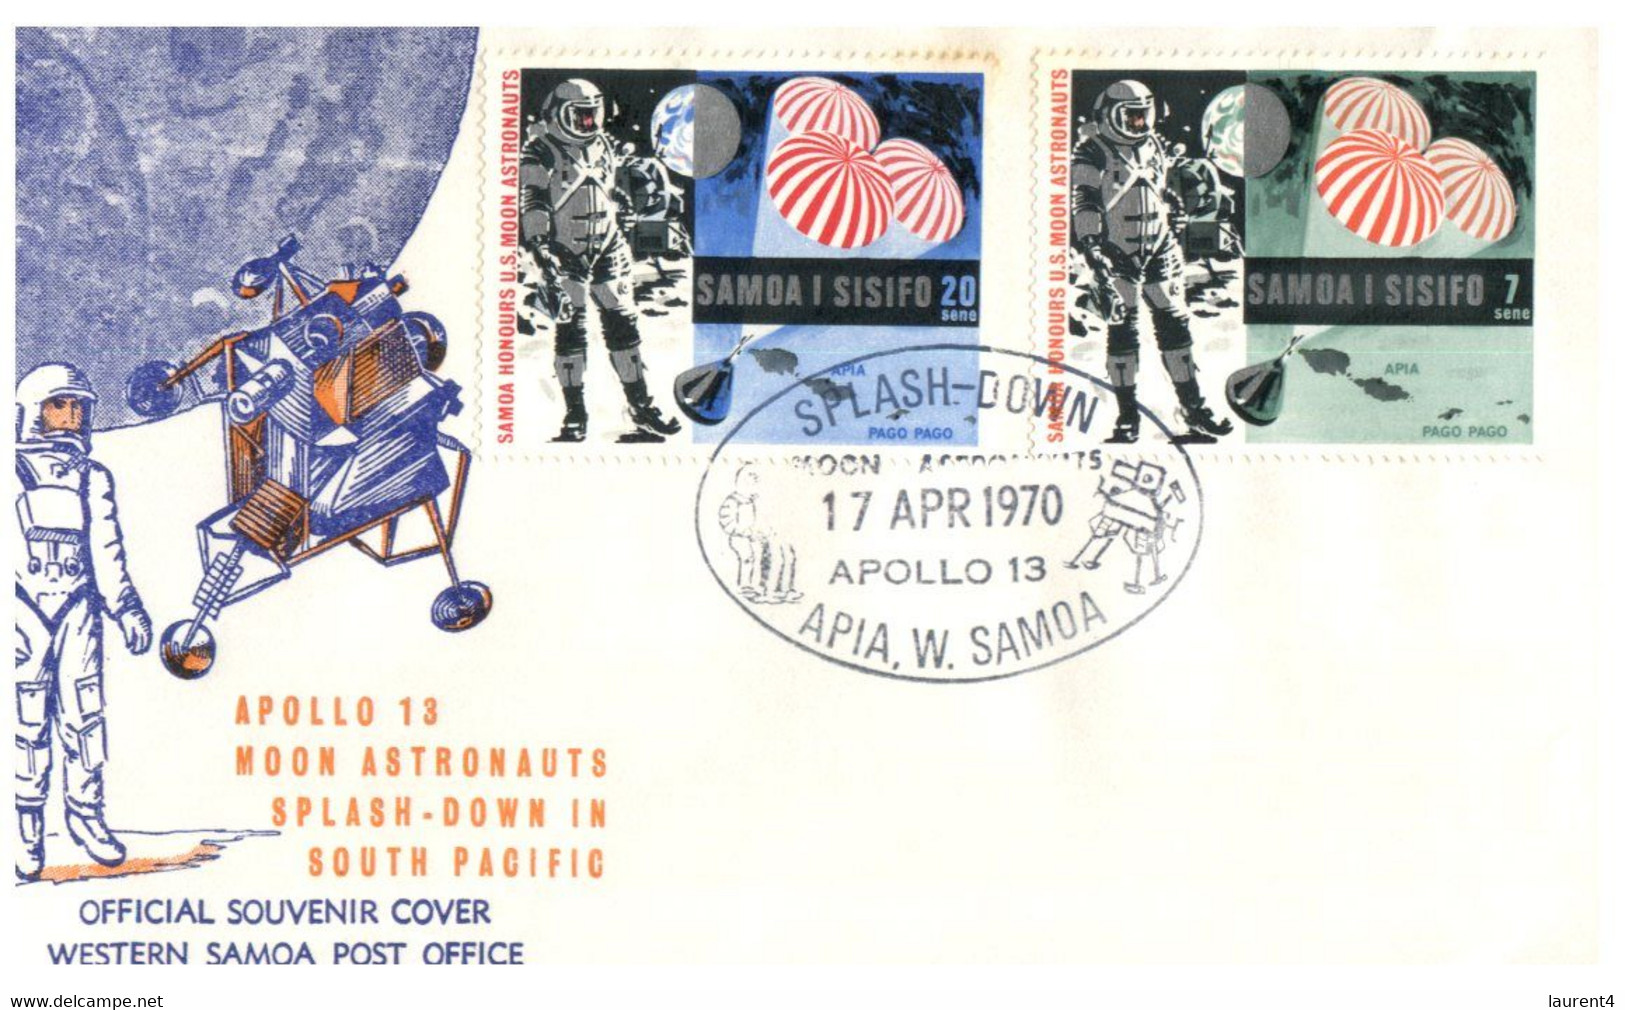 (SS 7) FDC - Apollo 13 - Spash Down - Samoa I Sisifo - 2 Covers - Ozeanien